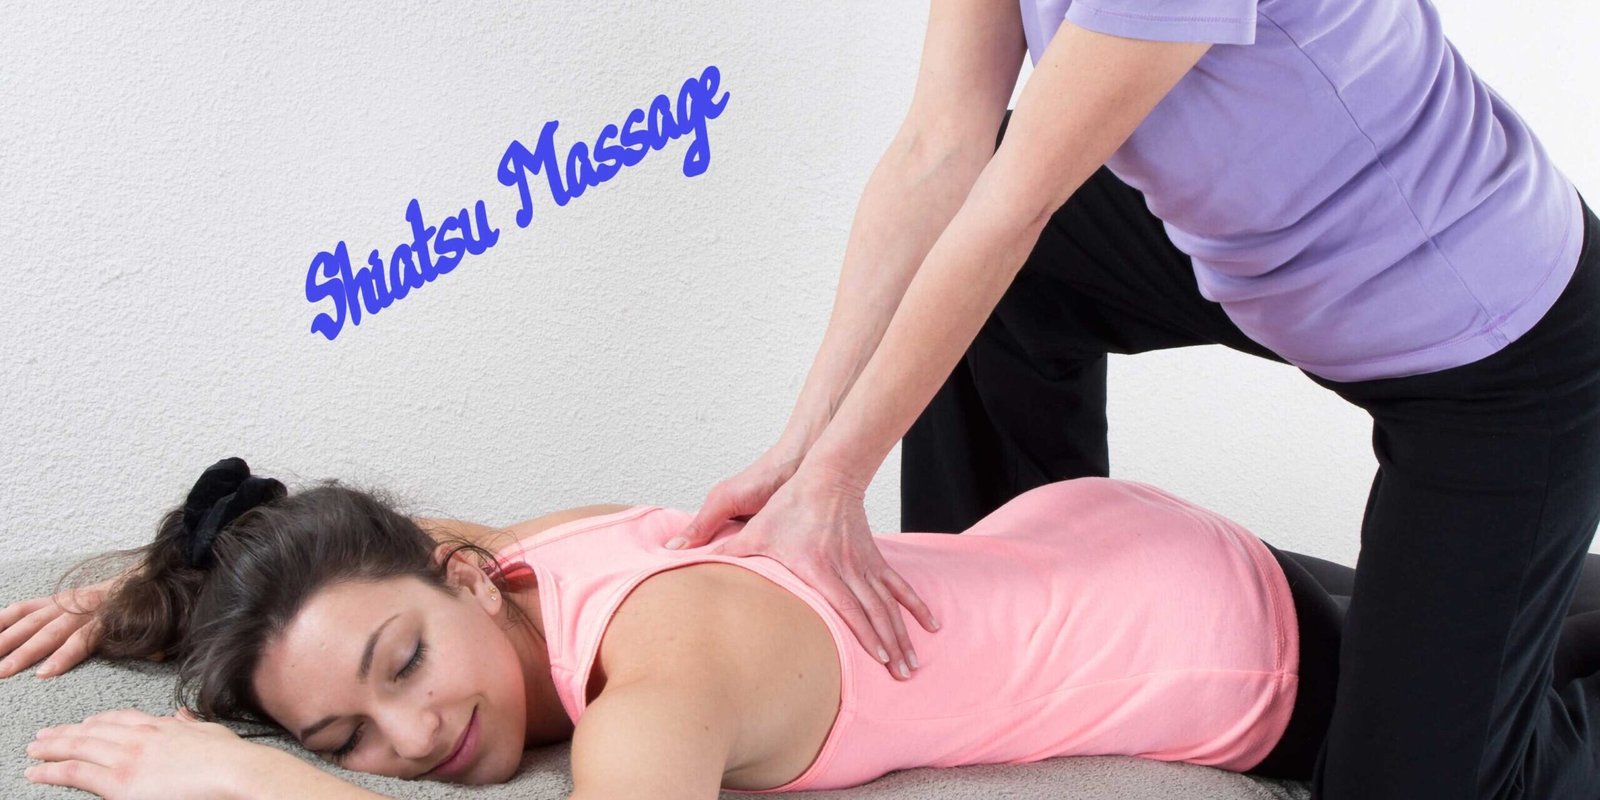 About Shiatsu Massage